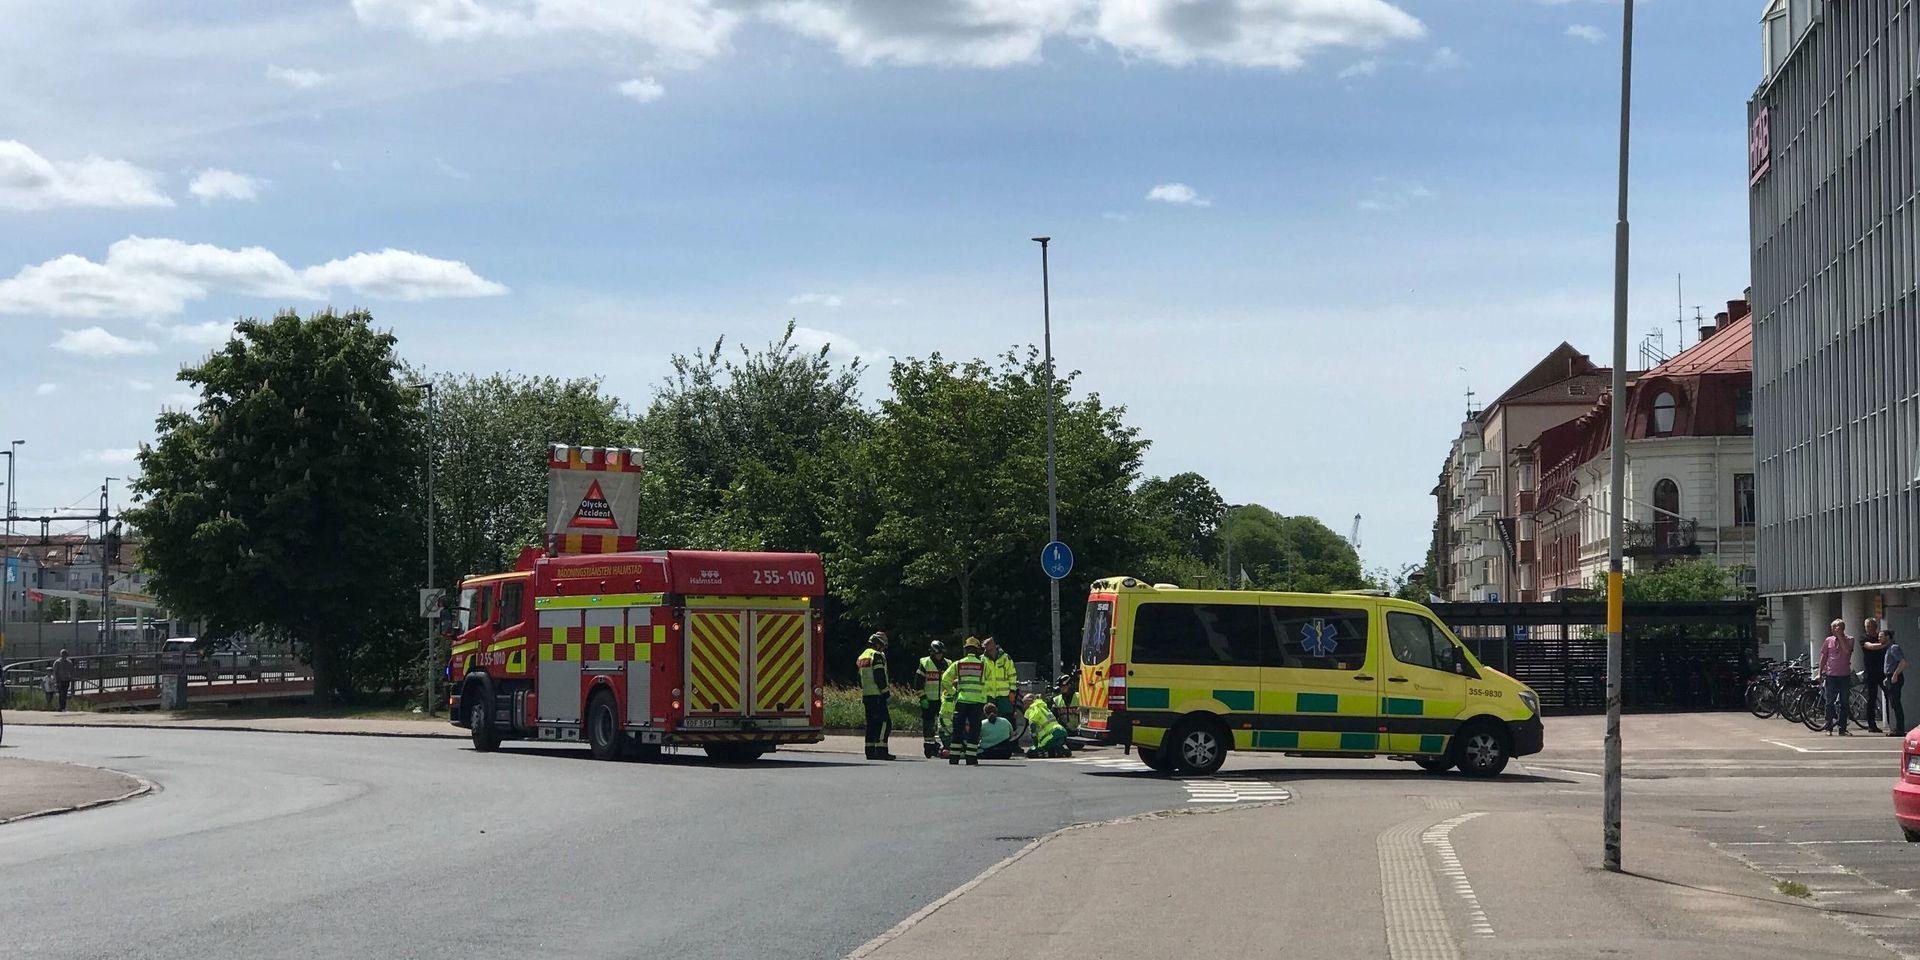 En kvinna i 40-årsåldern fick föras till sjukhus i ambulans efter en påkörningsolycka på Fredrik Ströms gata.